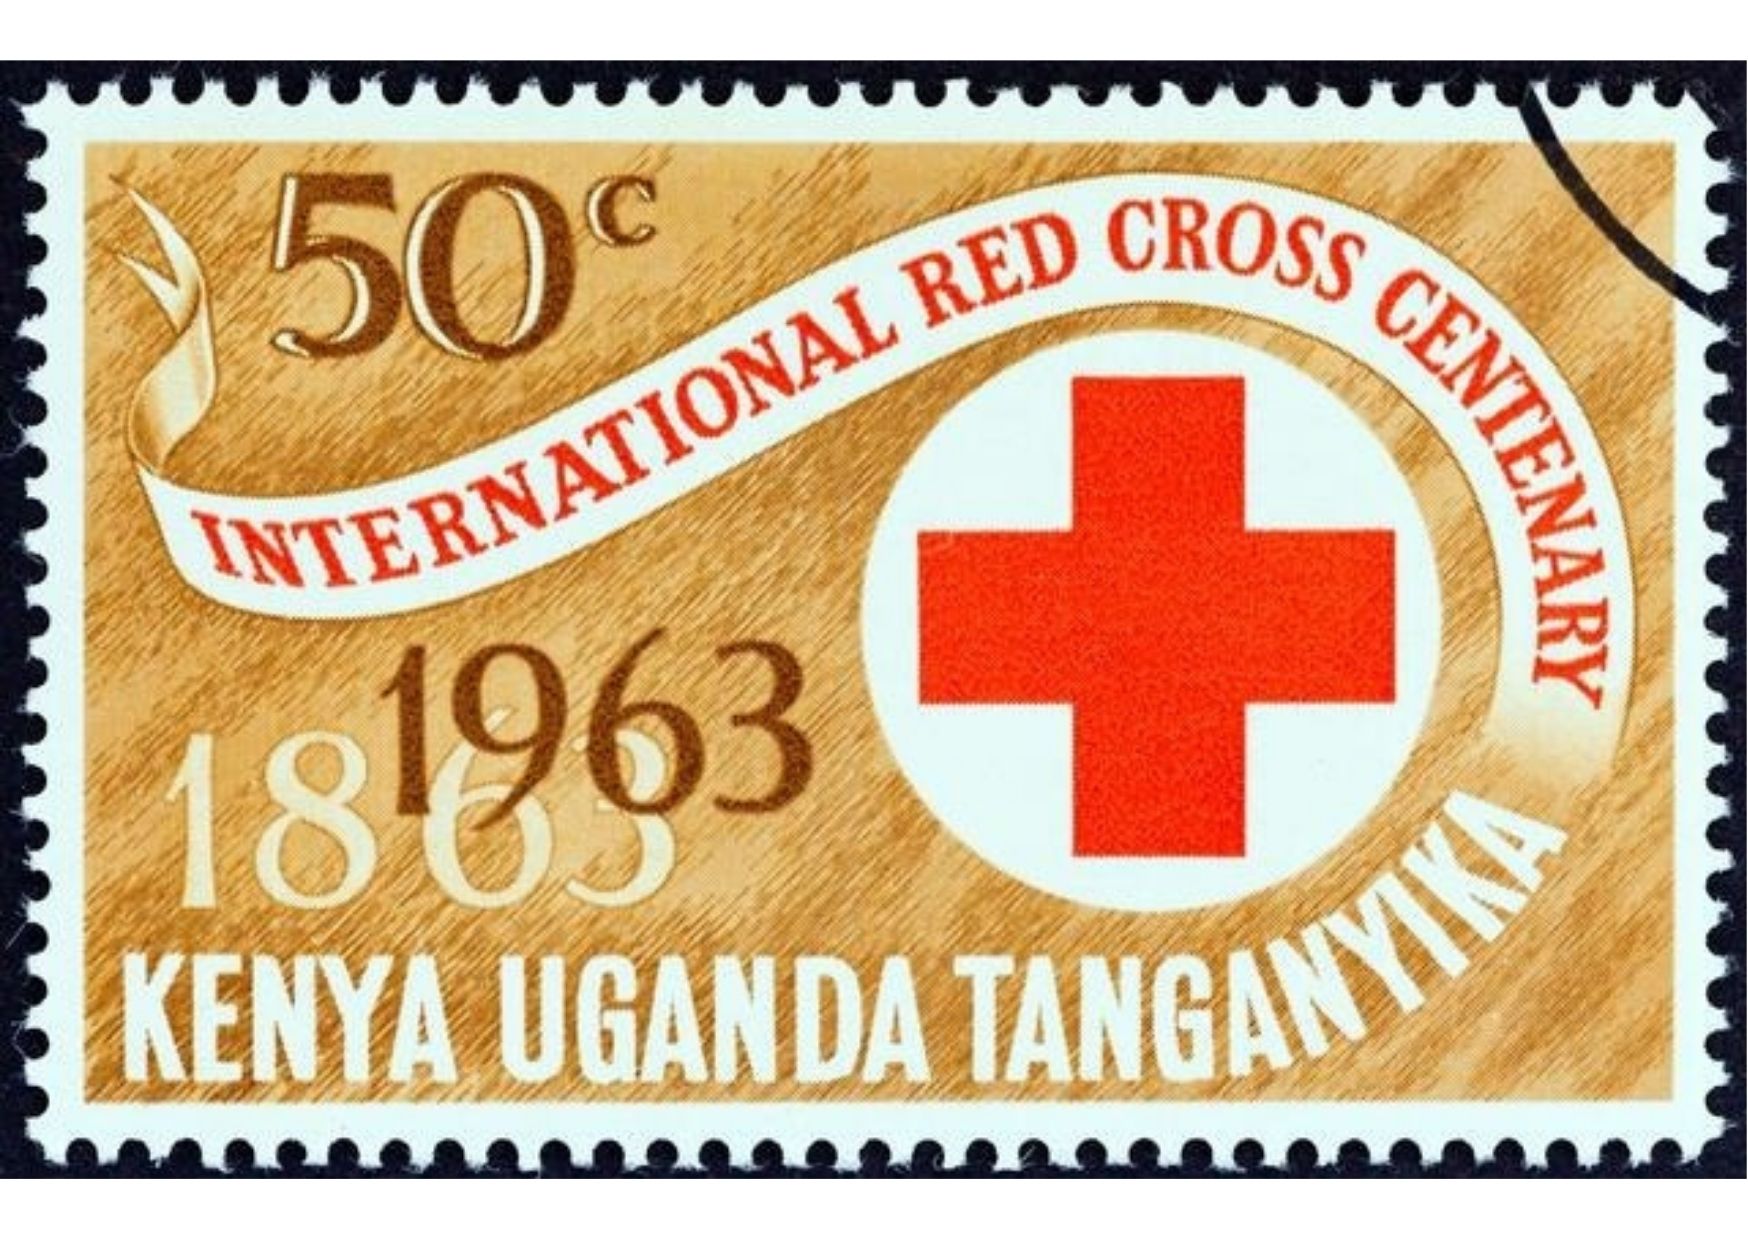 Intl Red Cross Centenary